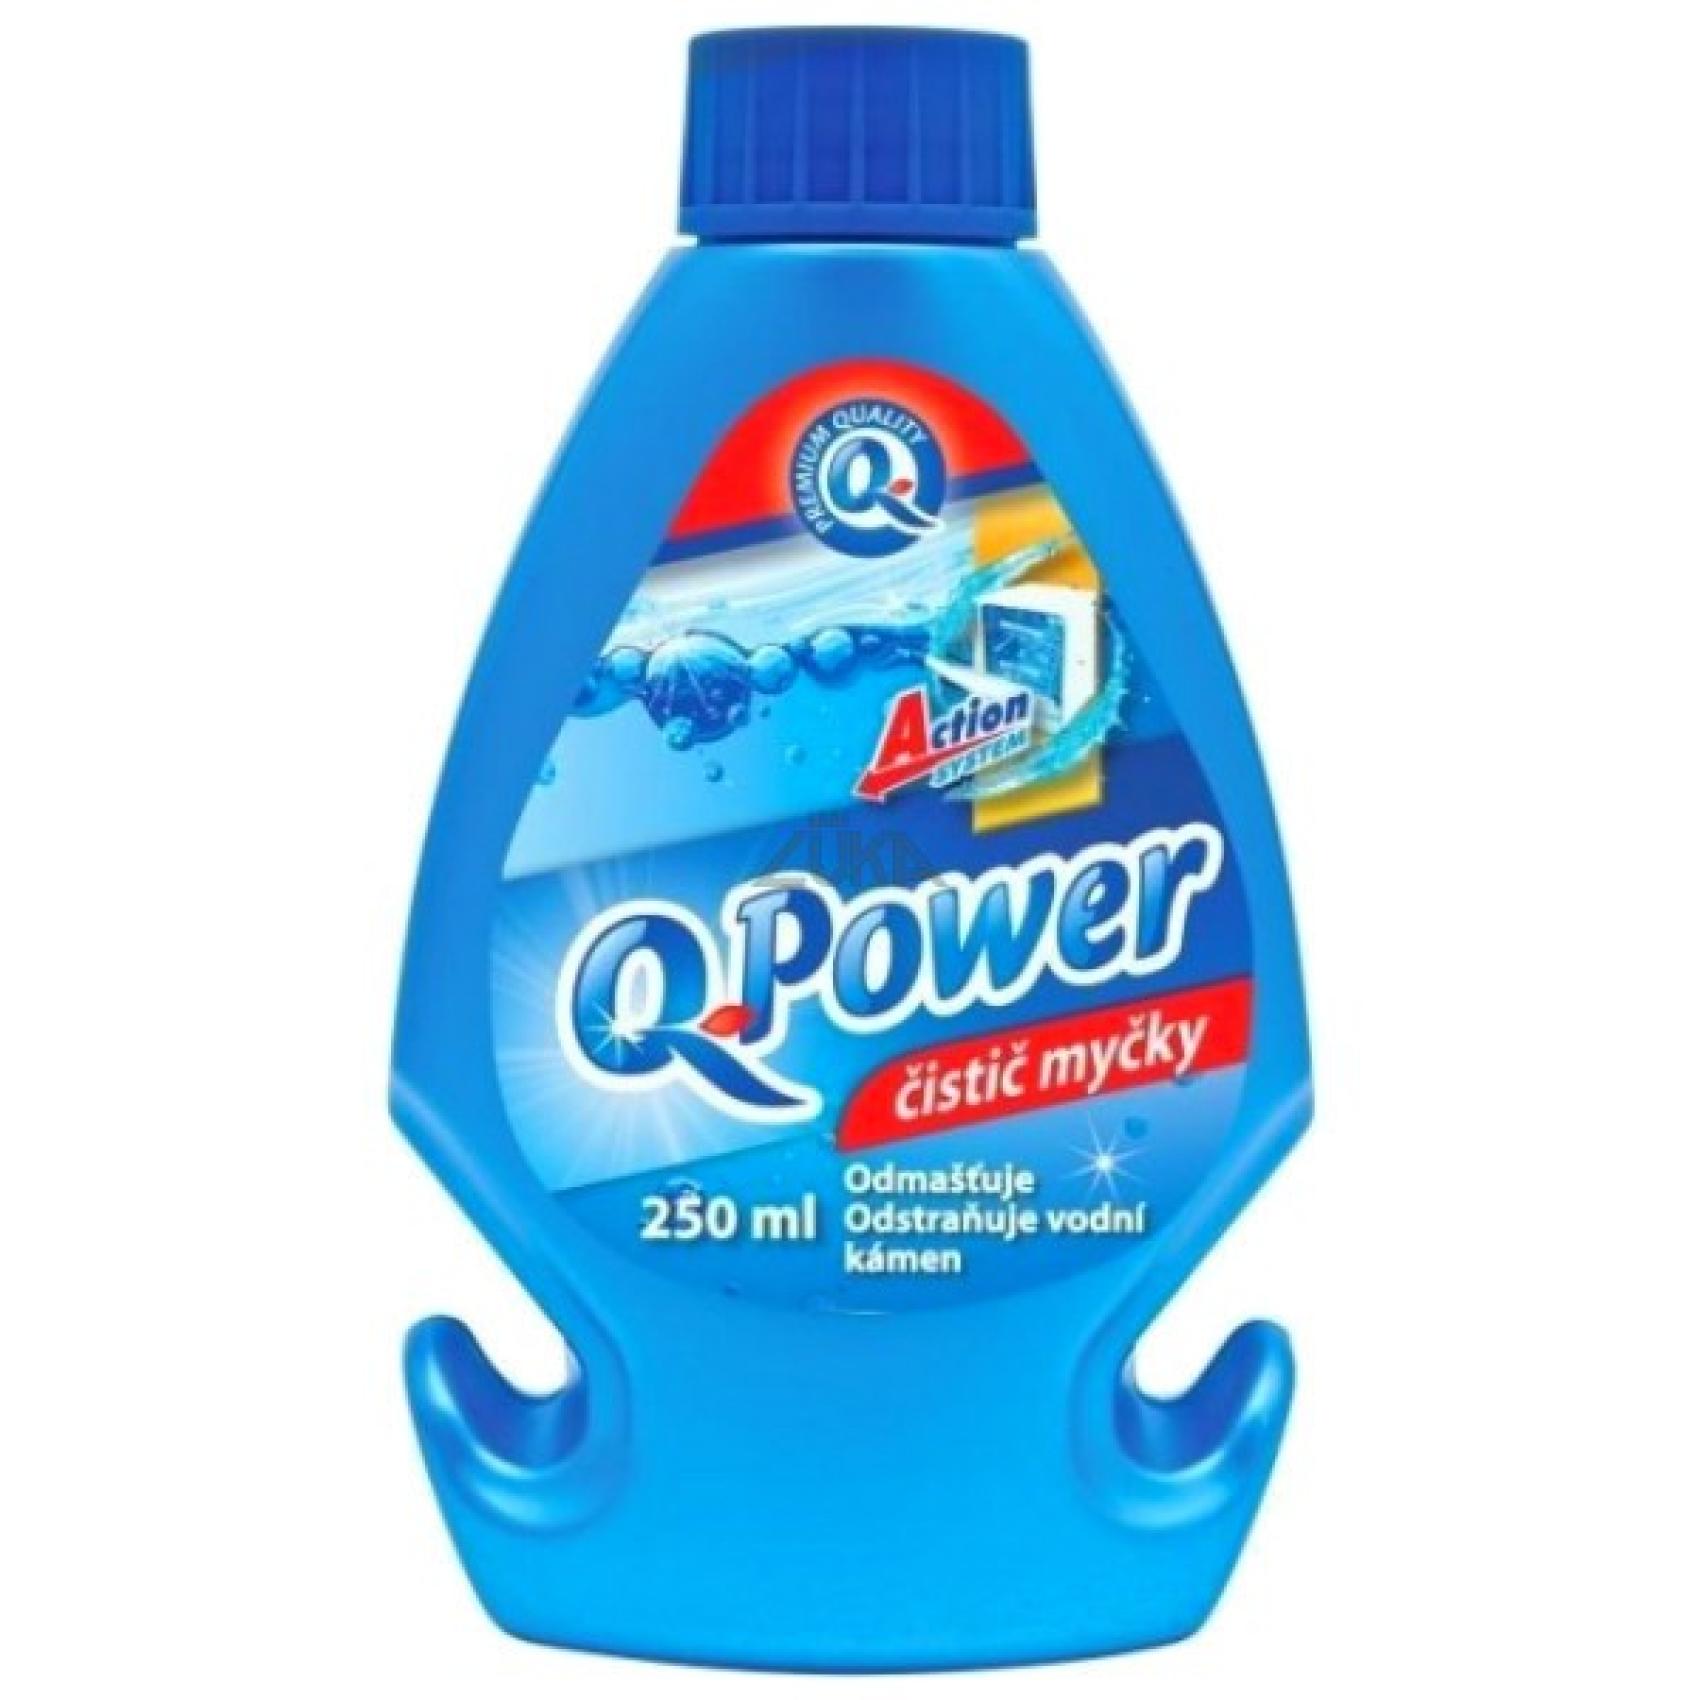 Q Power isti myky 250ml - Kliknutm na obrzek zavete